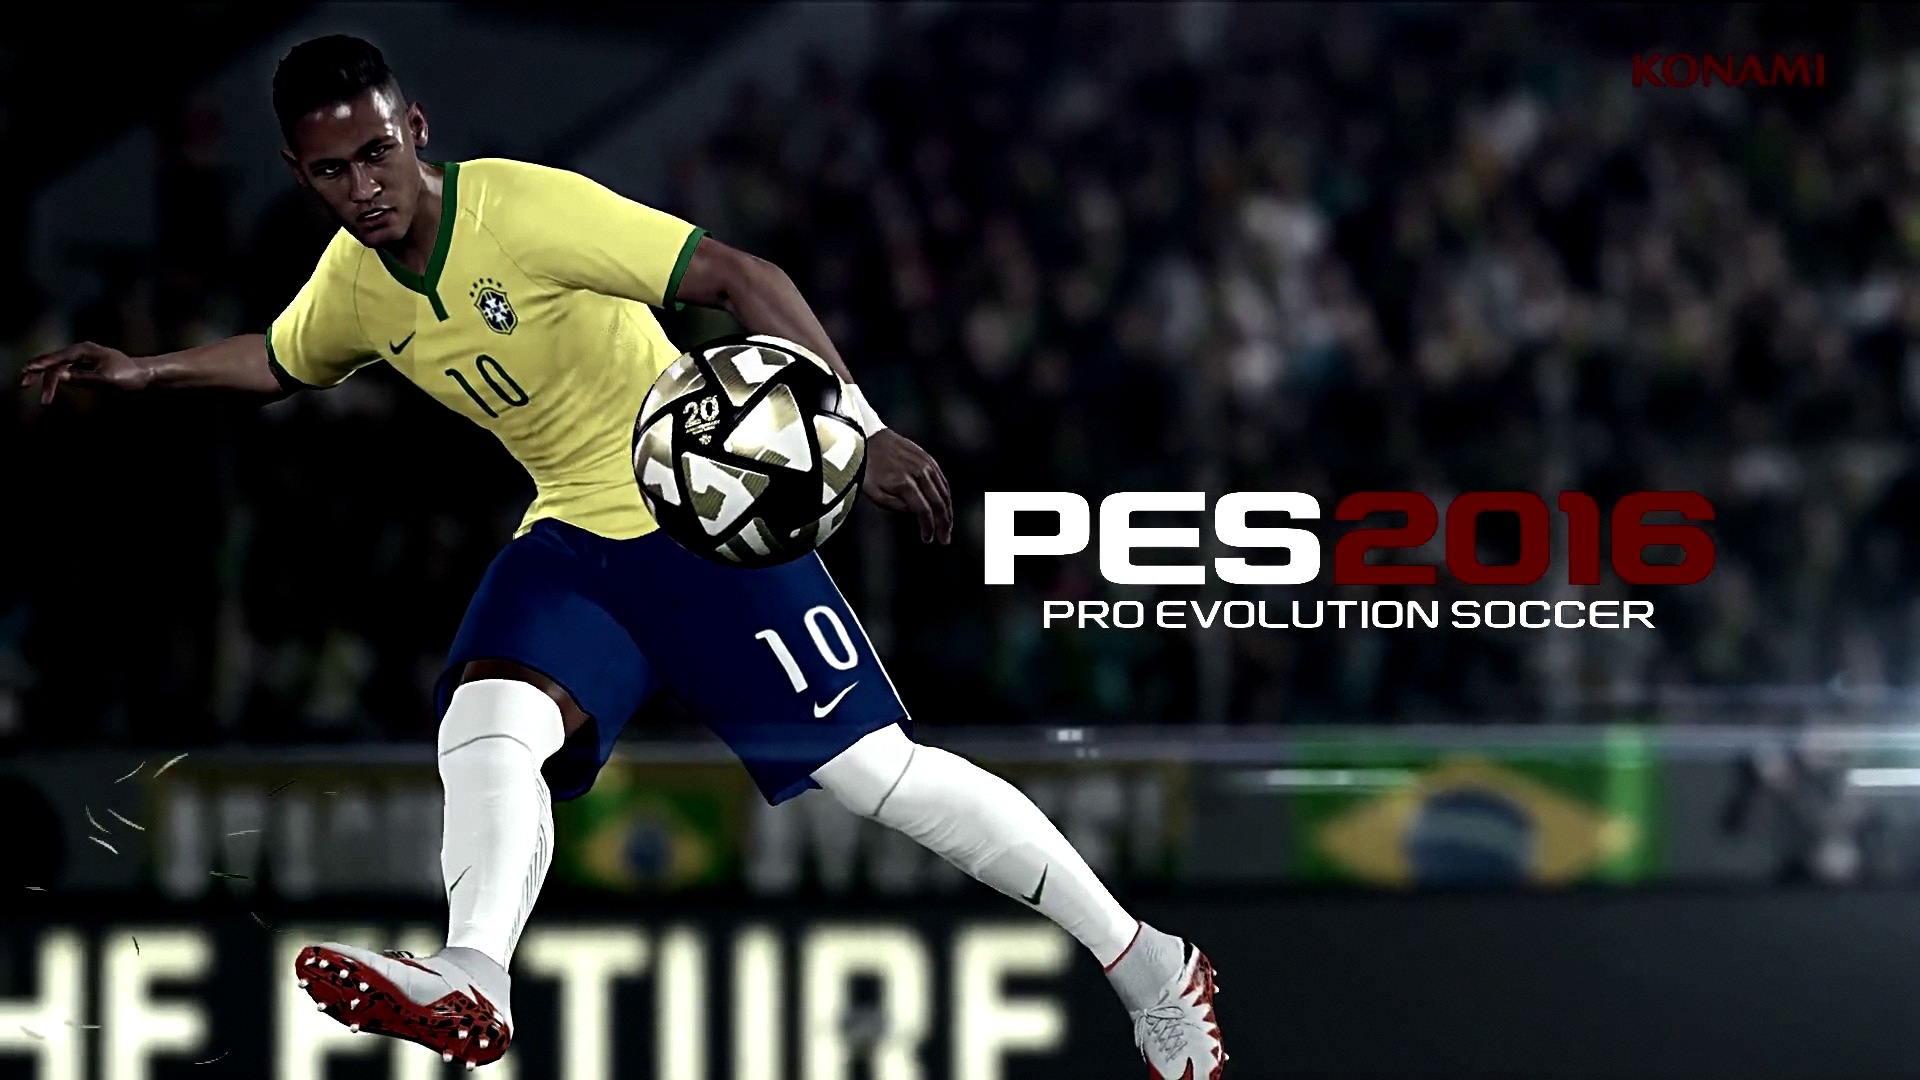 Pro Evolution Soccer Wallpaper HD